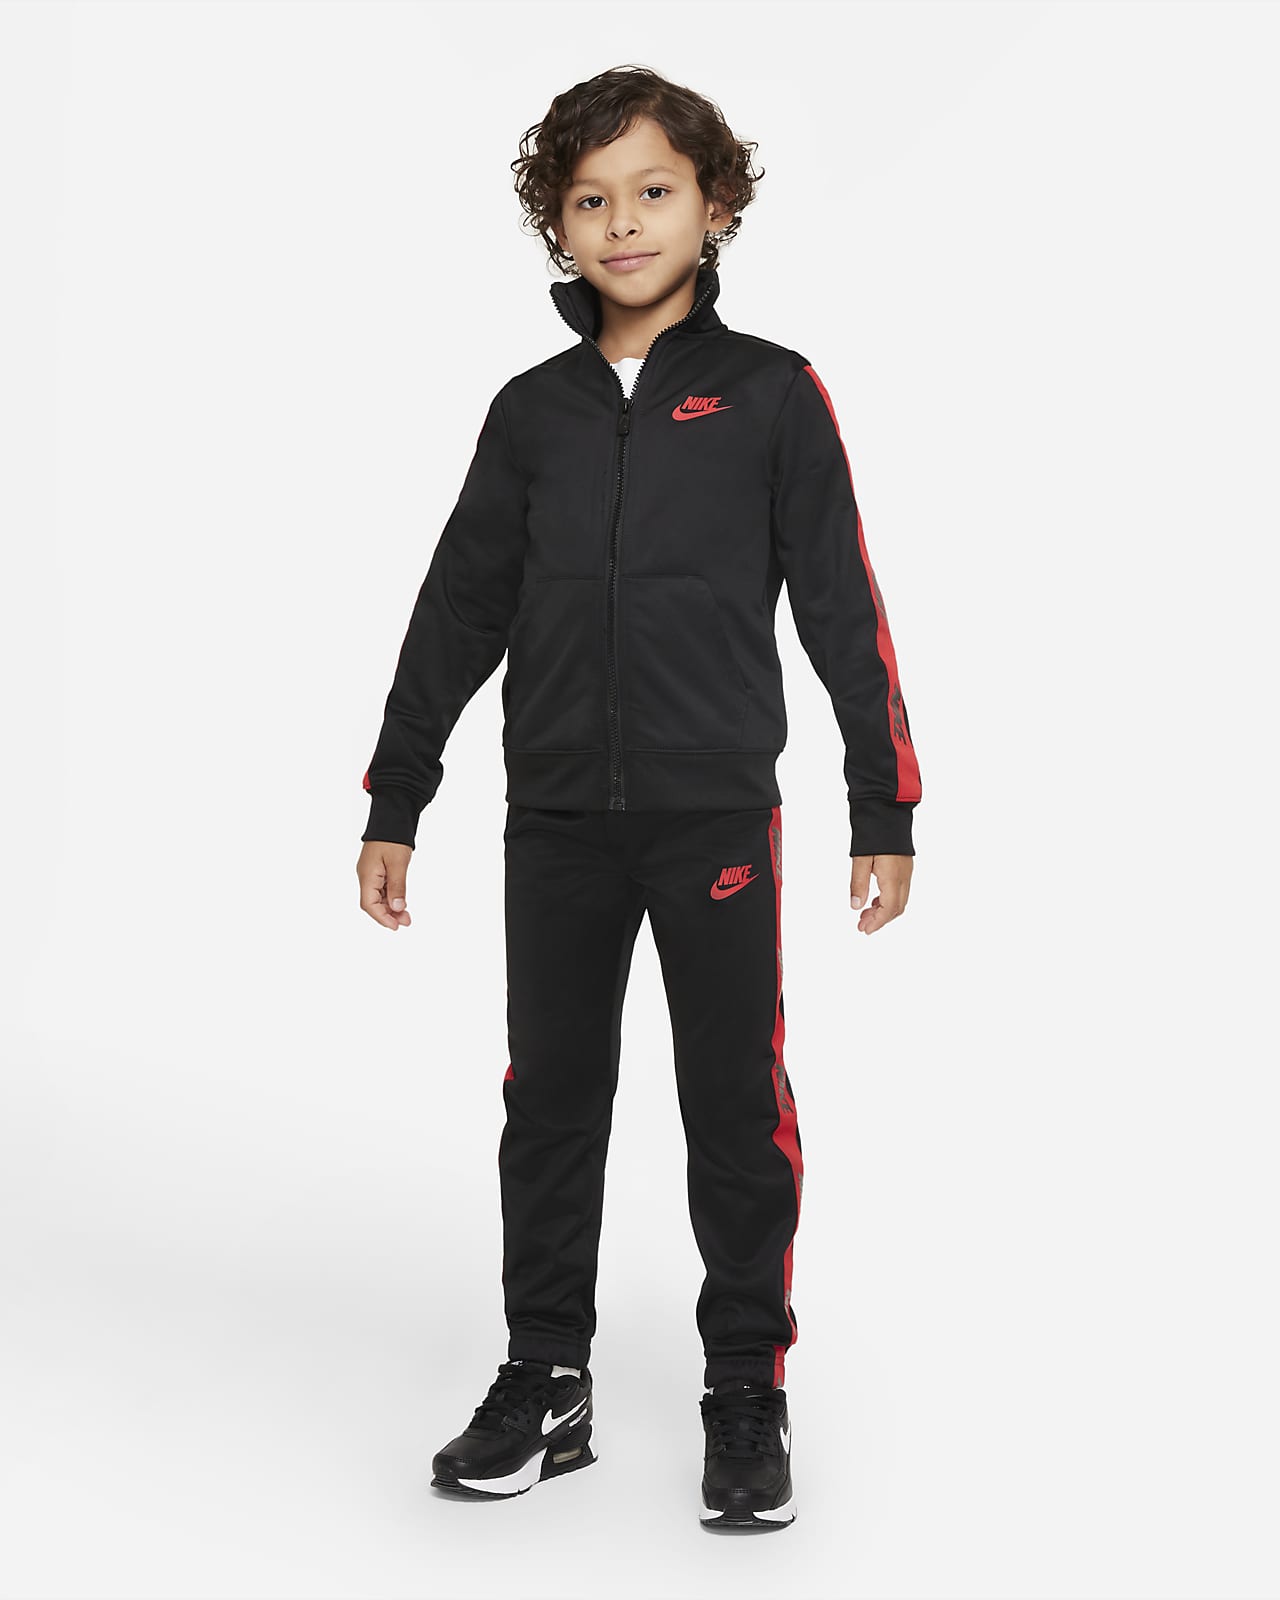 Chándal - Niño/a pequeño/a. Nike ES